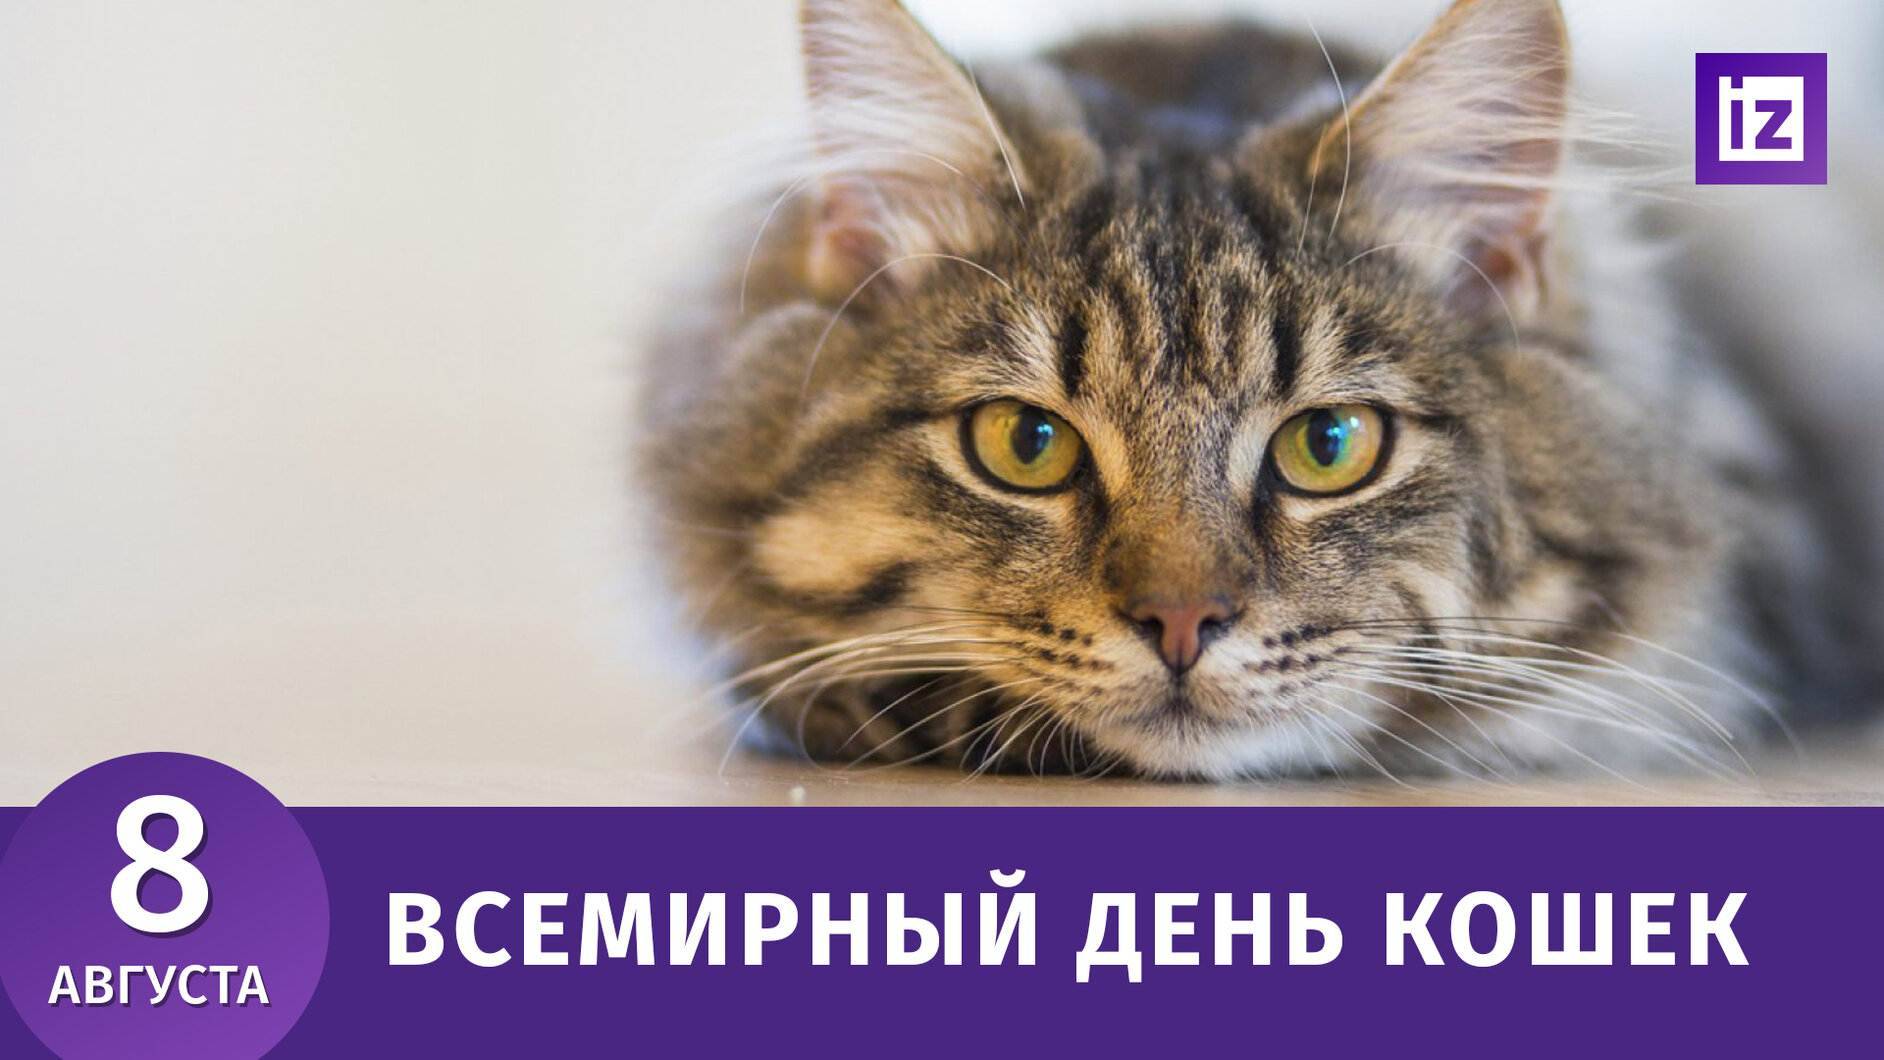 Когда отмечают день кошек в 2019 году в россии: дата праздника и история